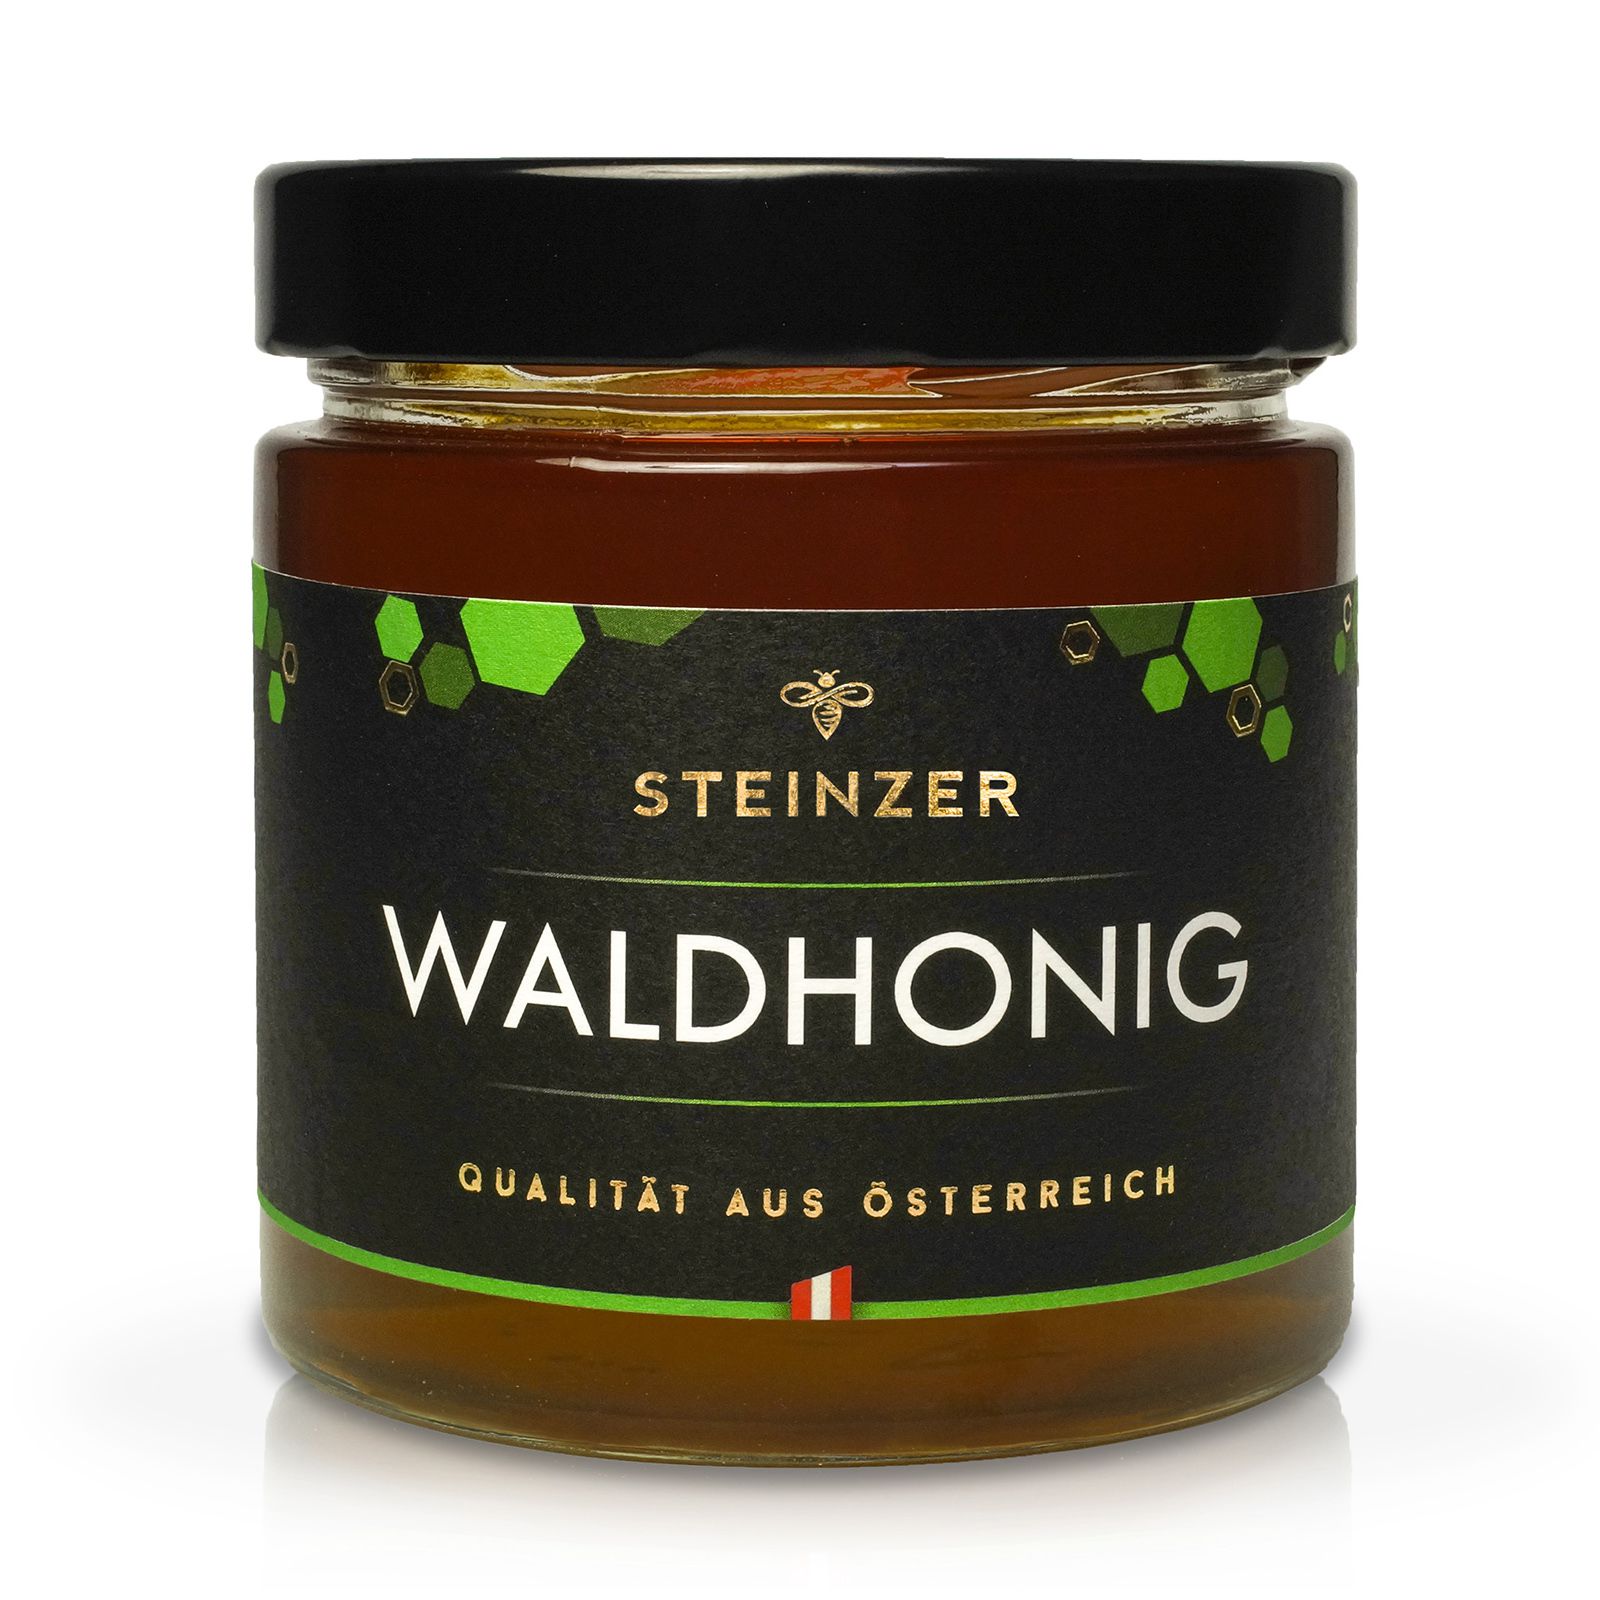 Waldhonig - Steinzer - Bauernladen